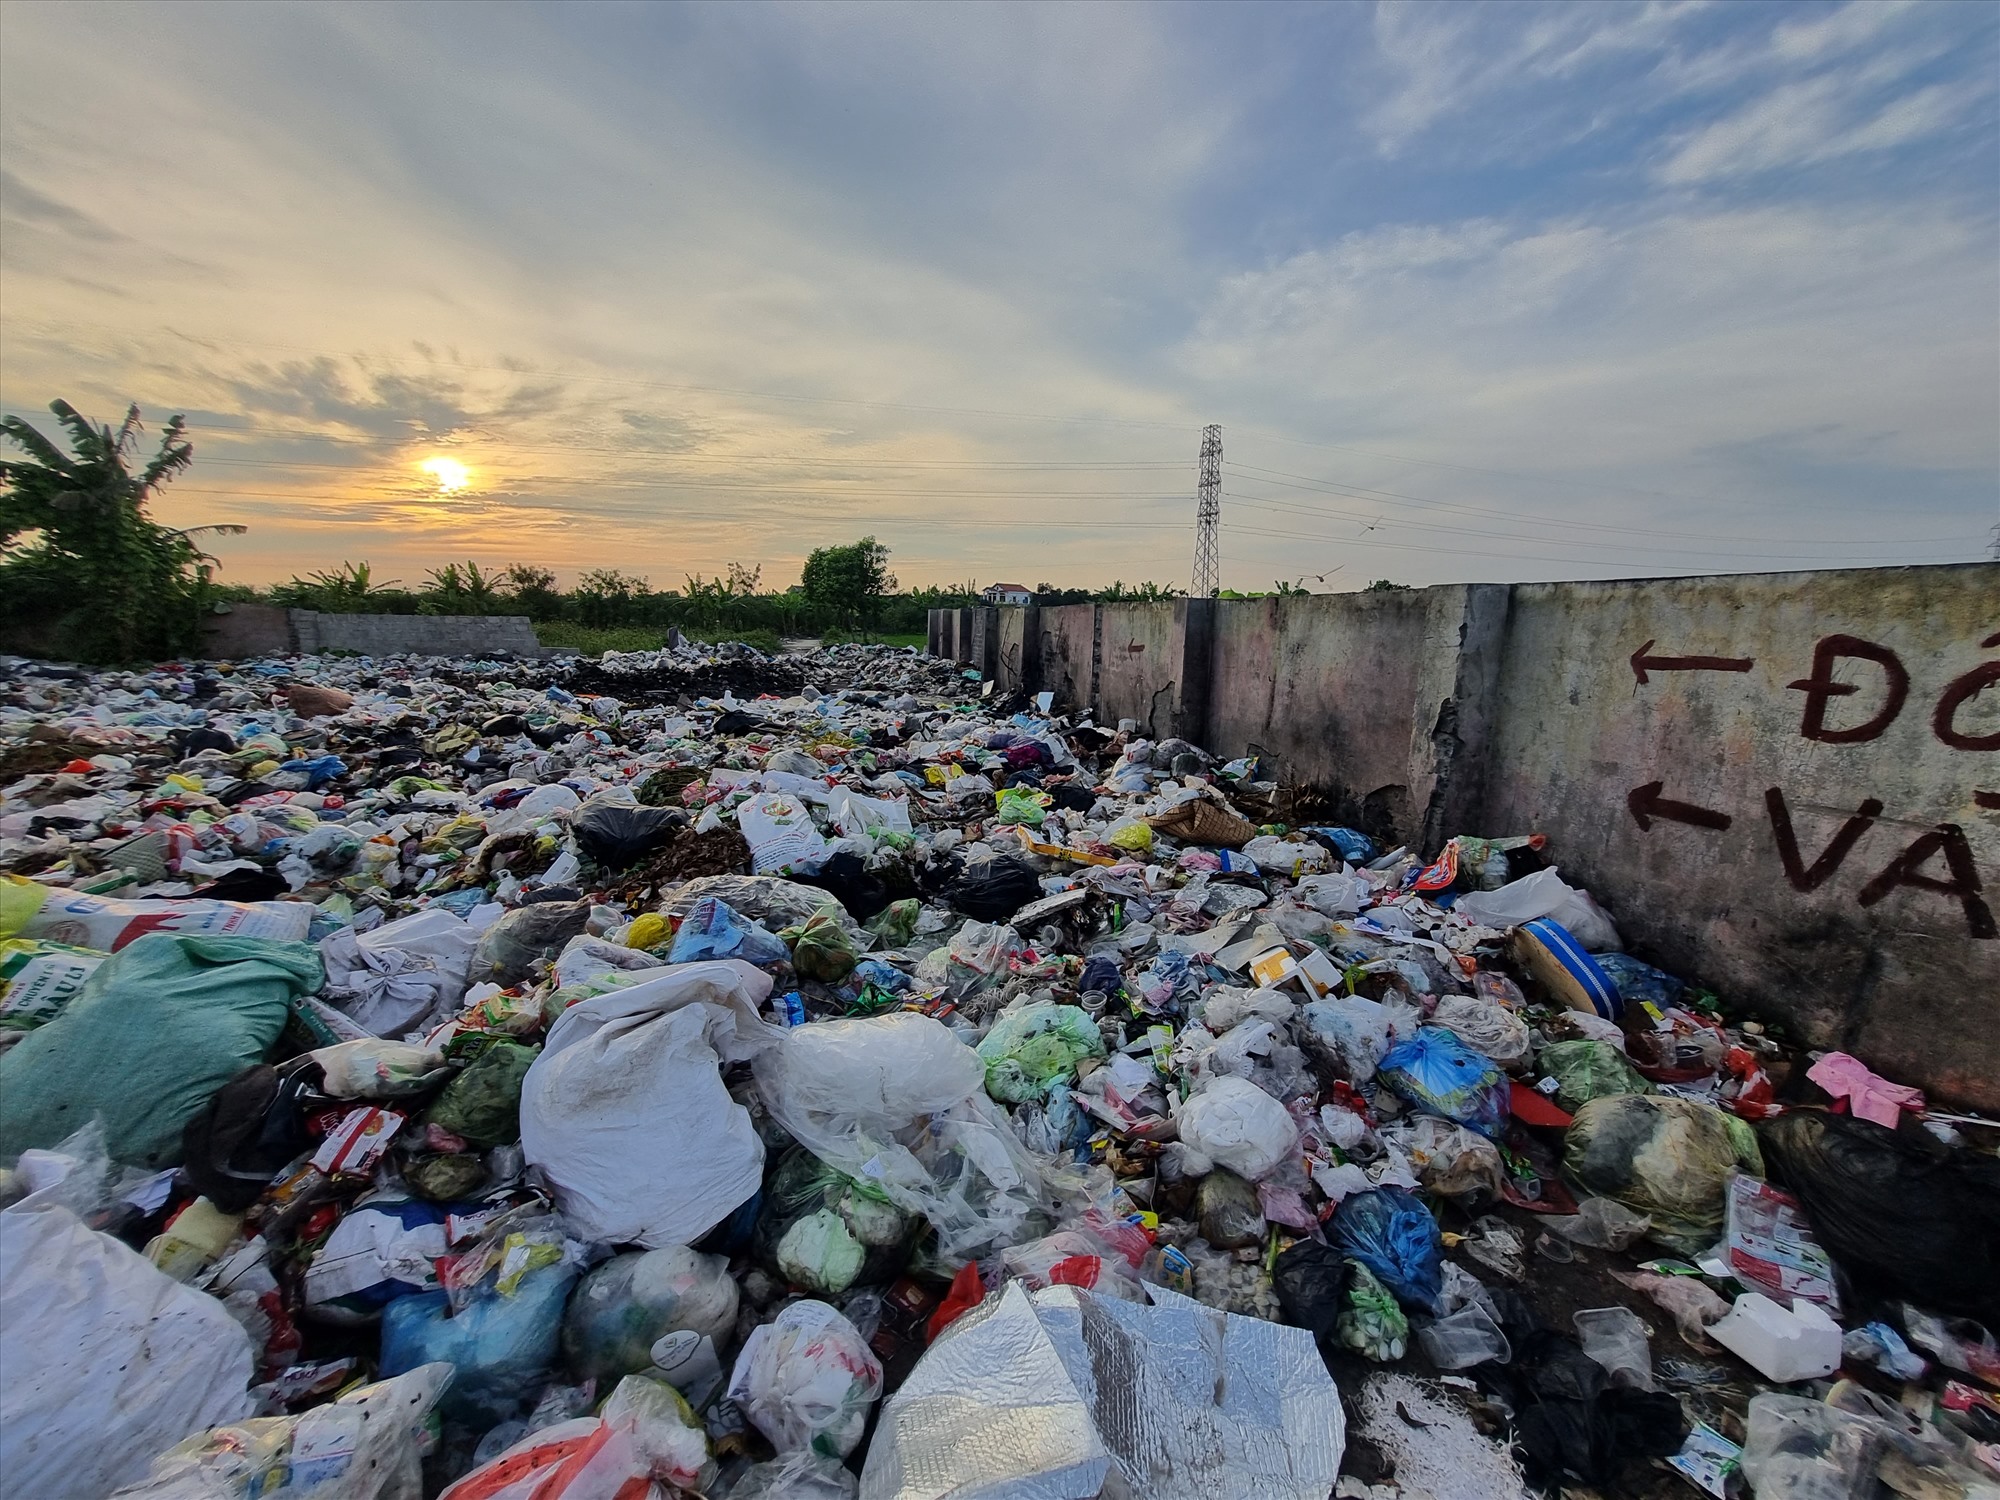 Là bãi rác trung chuyển nhưng rác tại bãi rác này chất thành đống, thường xuyên trong tình trạng đầy rác gây ô nhiễm.